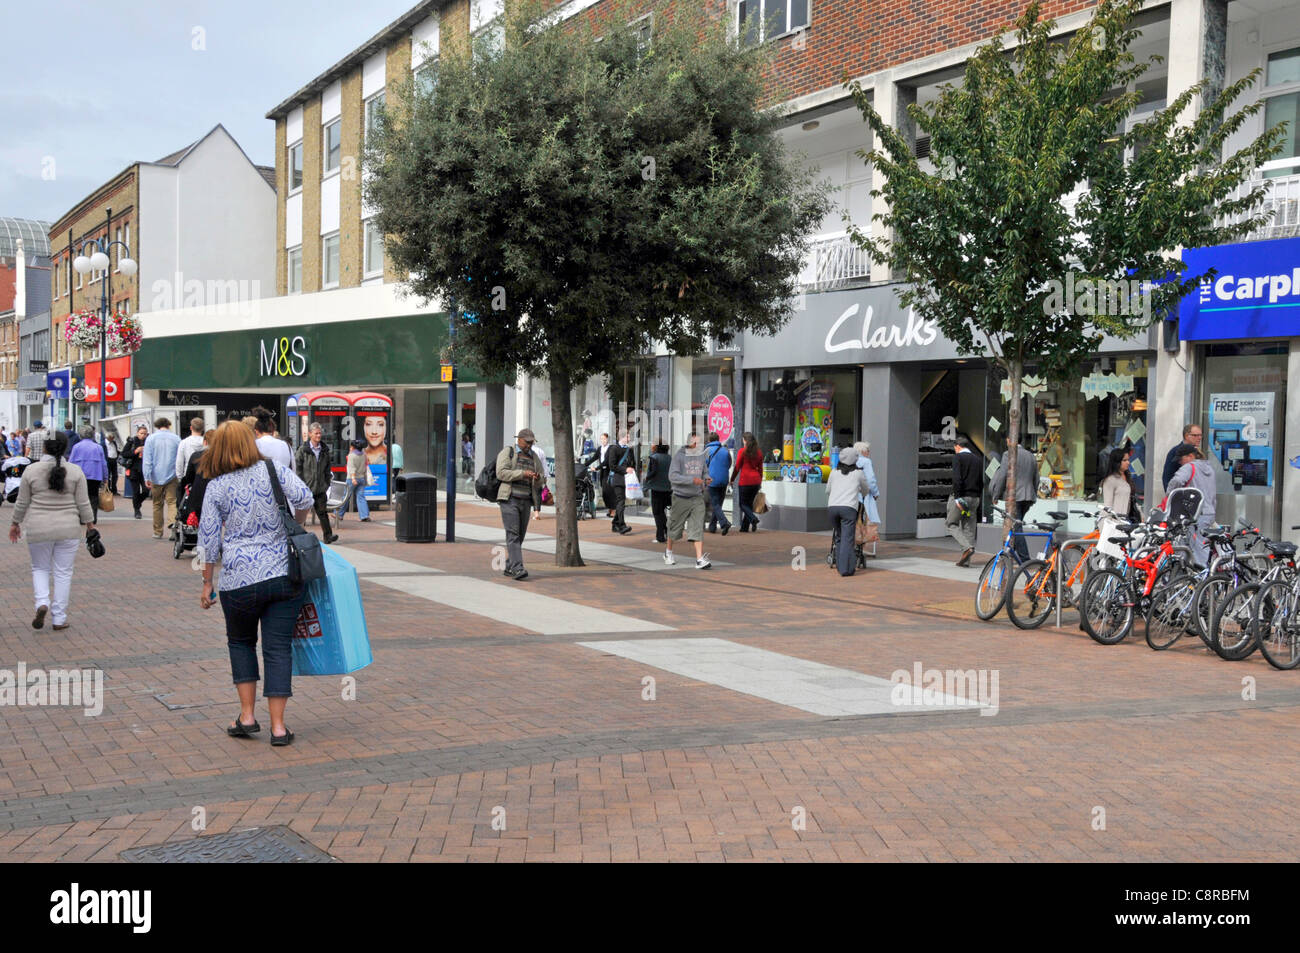 Scène de rue les gens font du shopping dans les rues piétonnes de Kingston upon Thames High Street inclut M&S et Clarks magasins à l'ouest de Londres Angleterre Royaume-Uni Banque D'Images